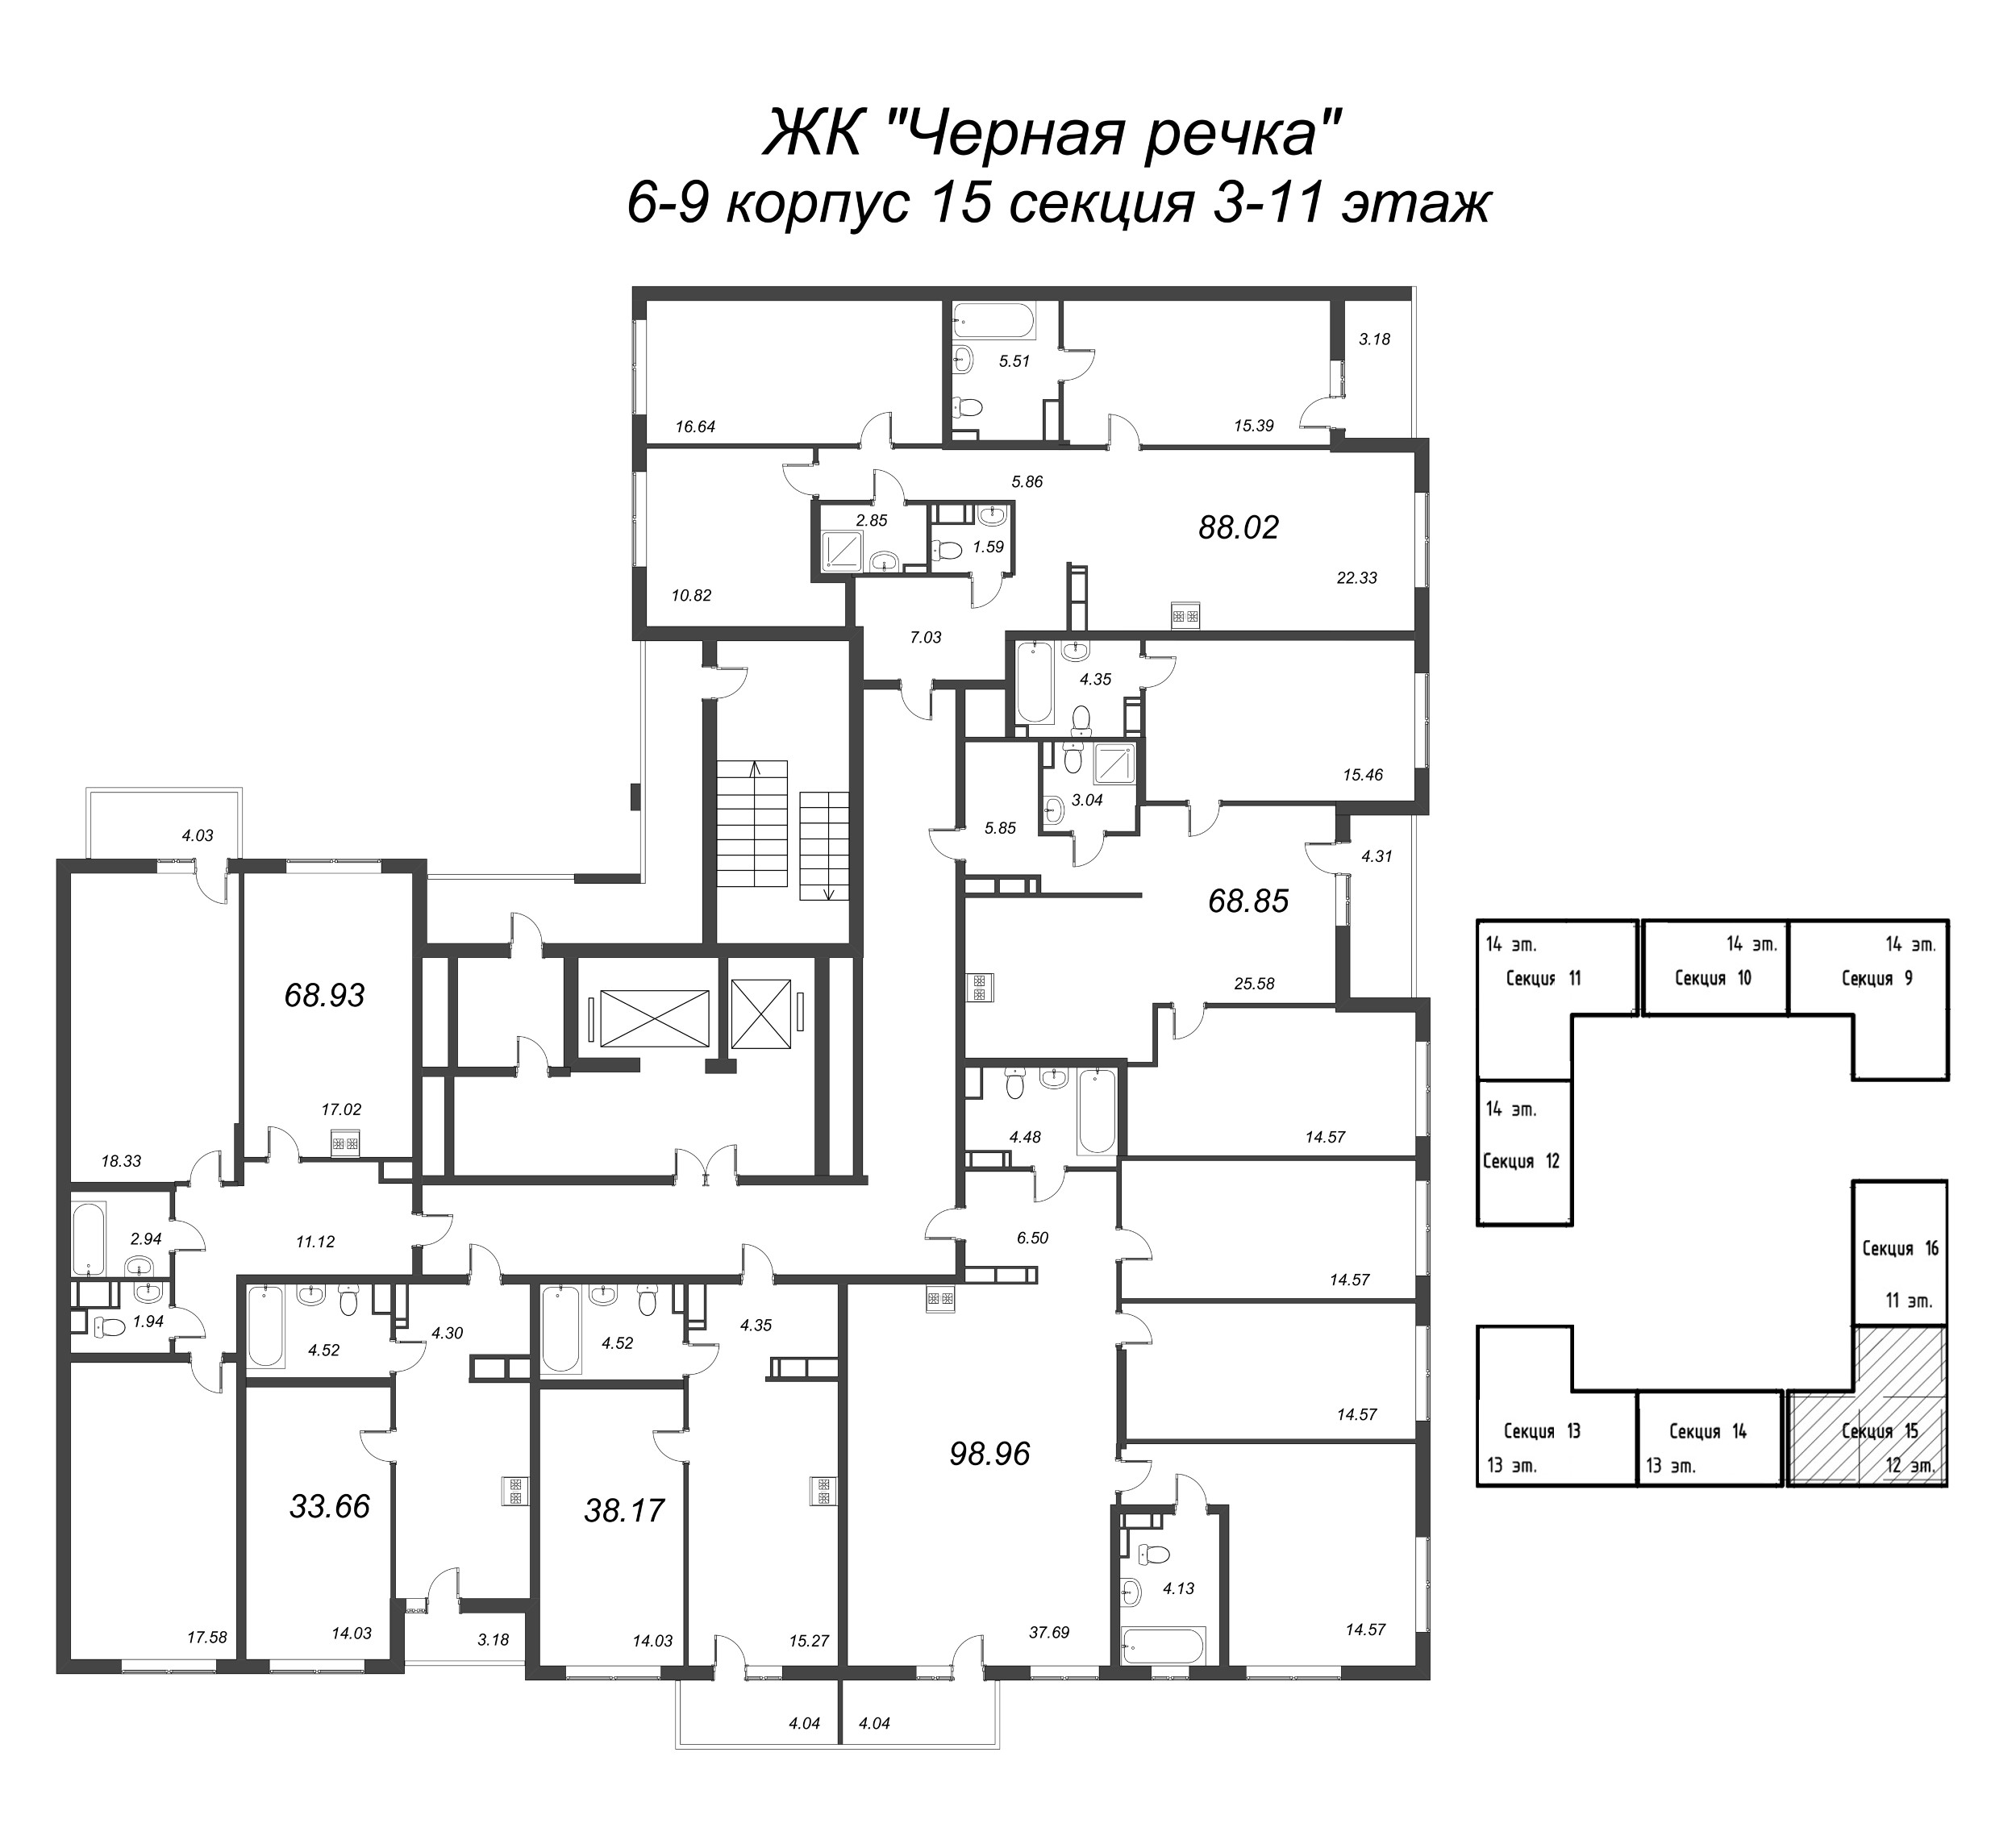 4-комнатная (Евро) квартира, 88.02 м² в ЖК "Чёрная речка" - планировка этажа